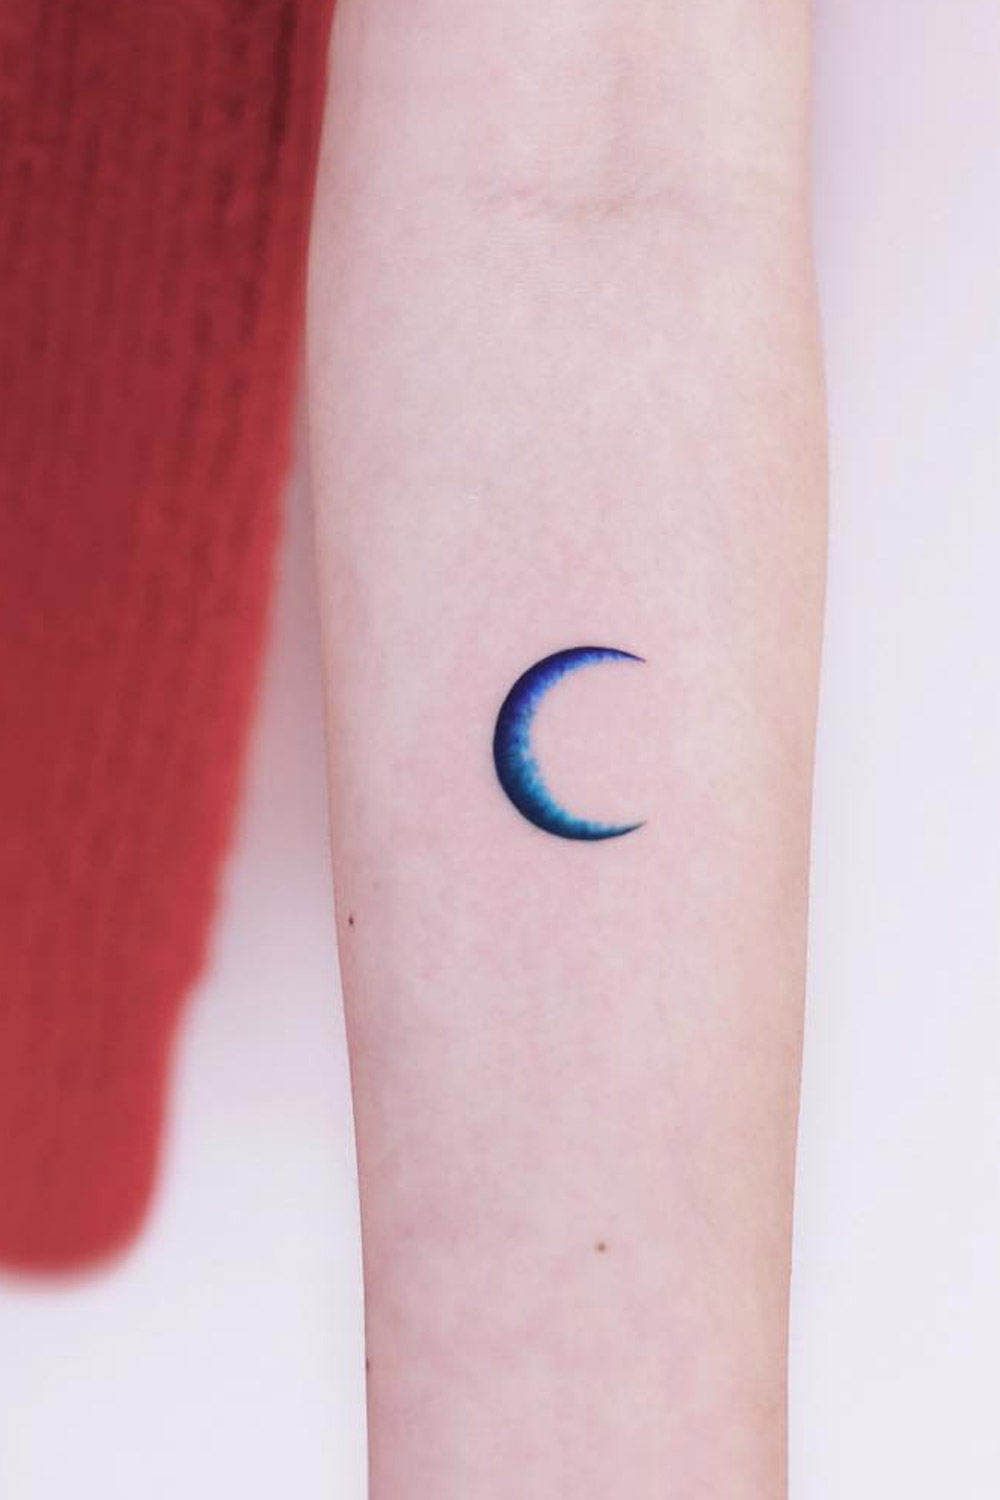 Simple Moon Tattoo Design